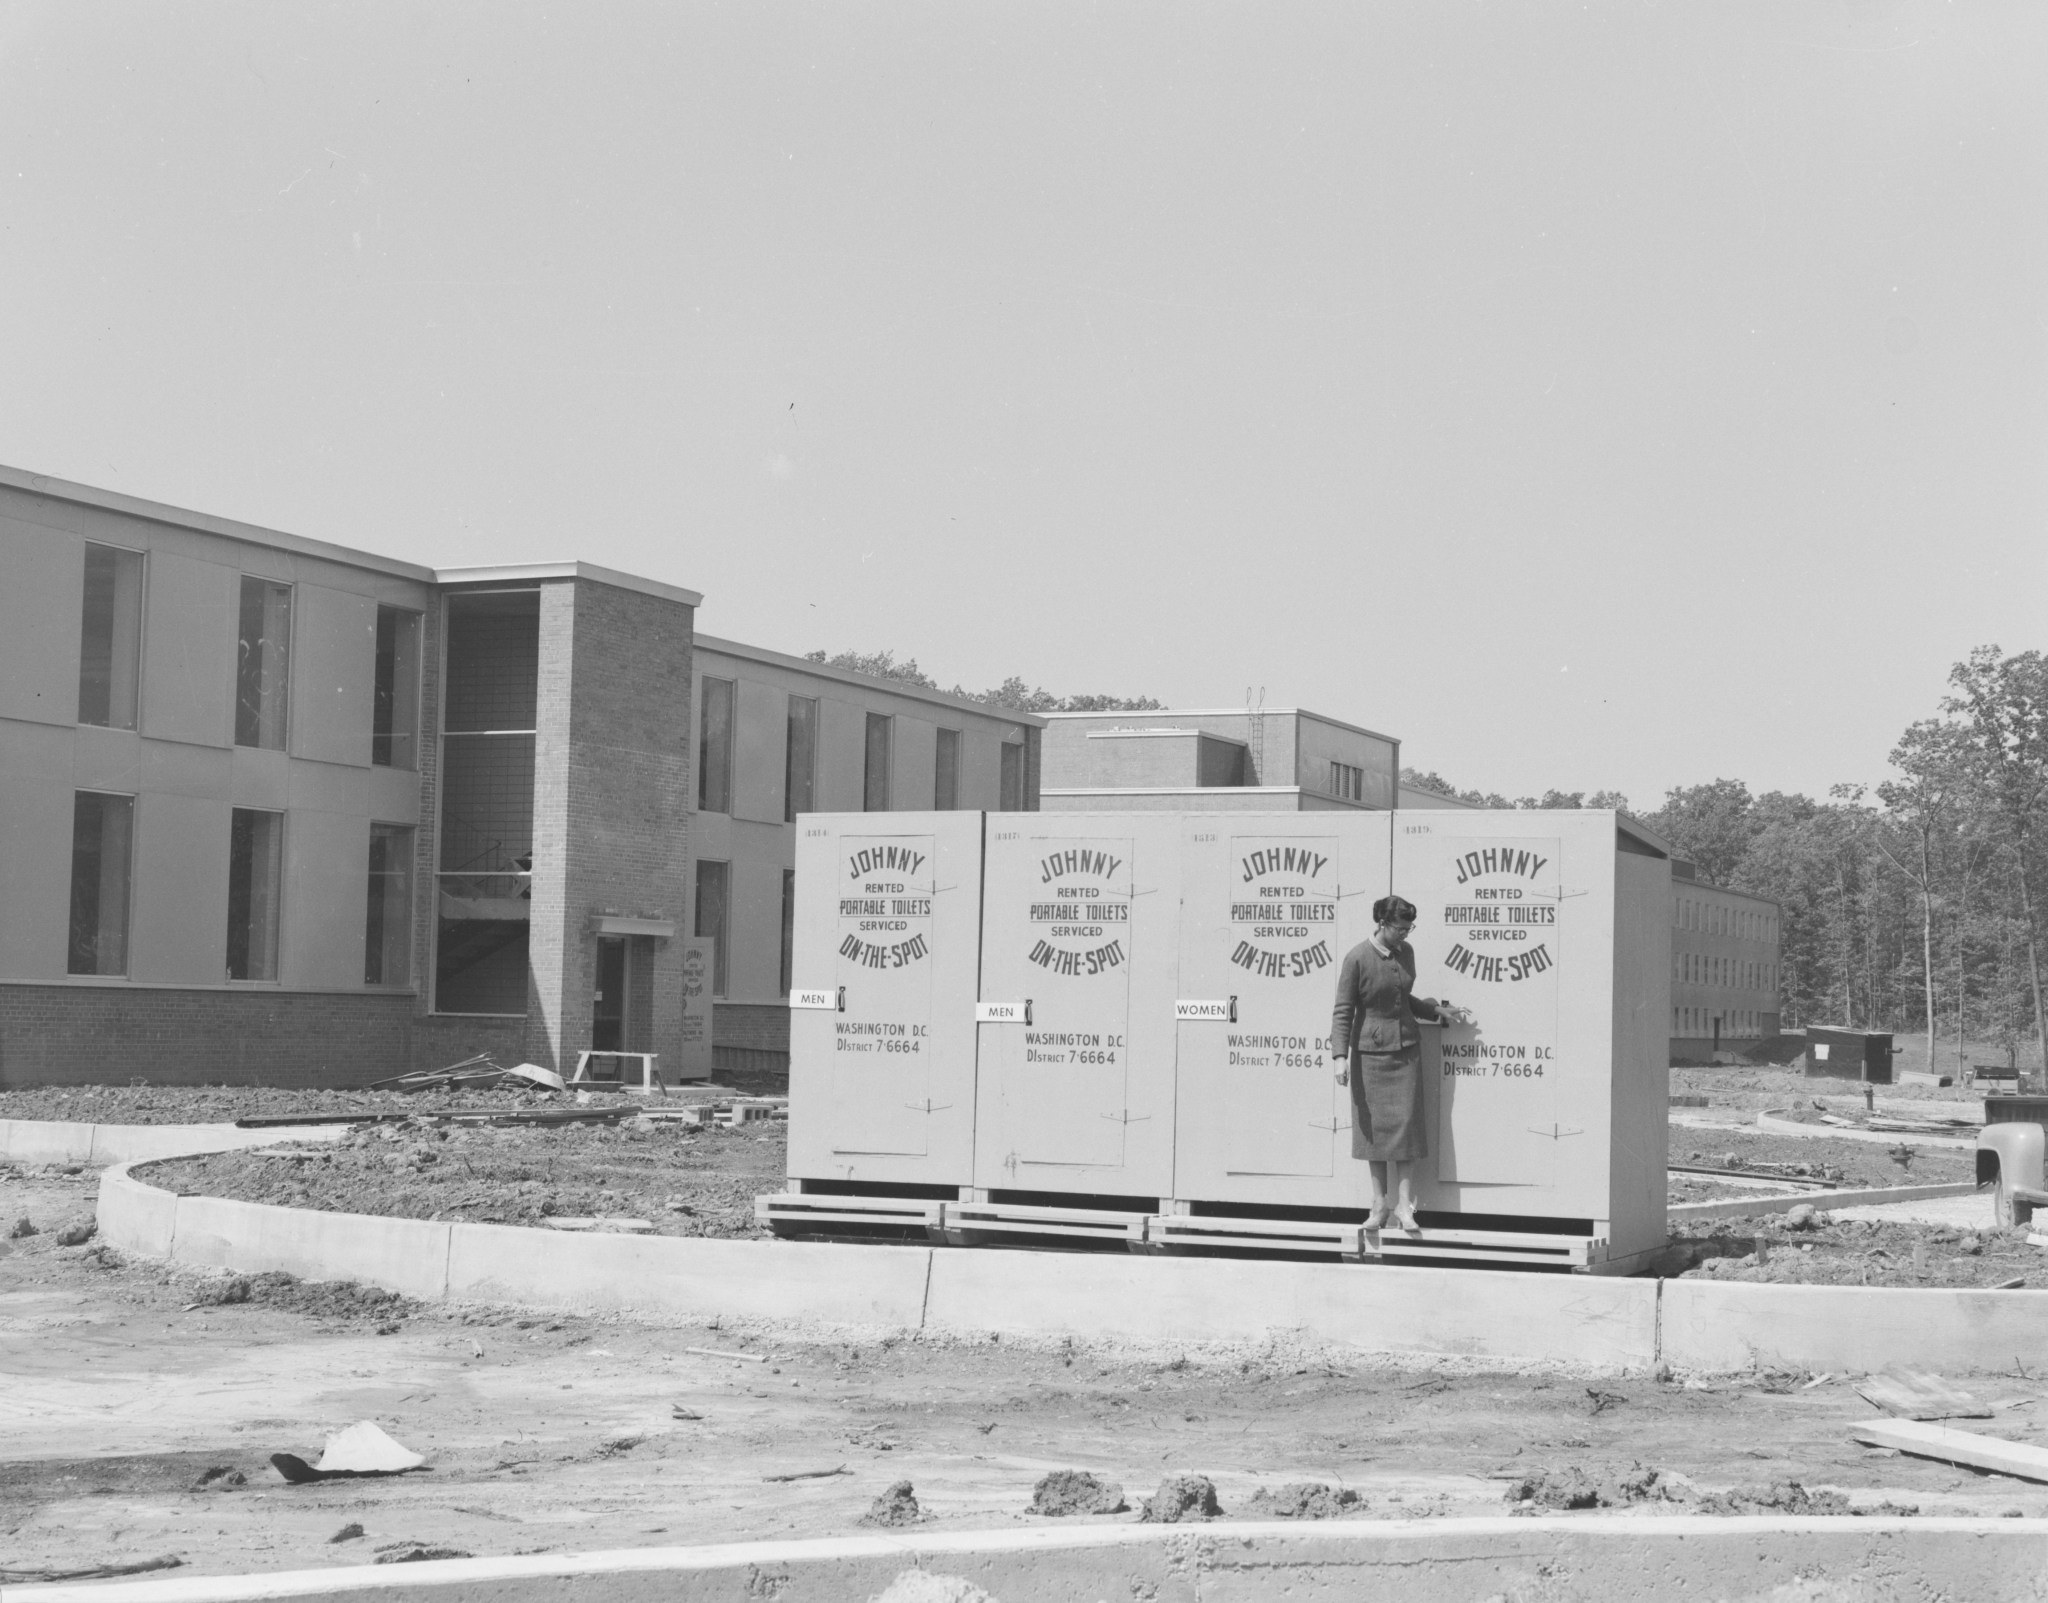 A row of 4 portable toilets outside NASA Goddard's Building 1 circa 1960